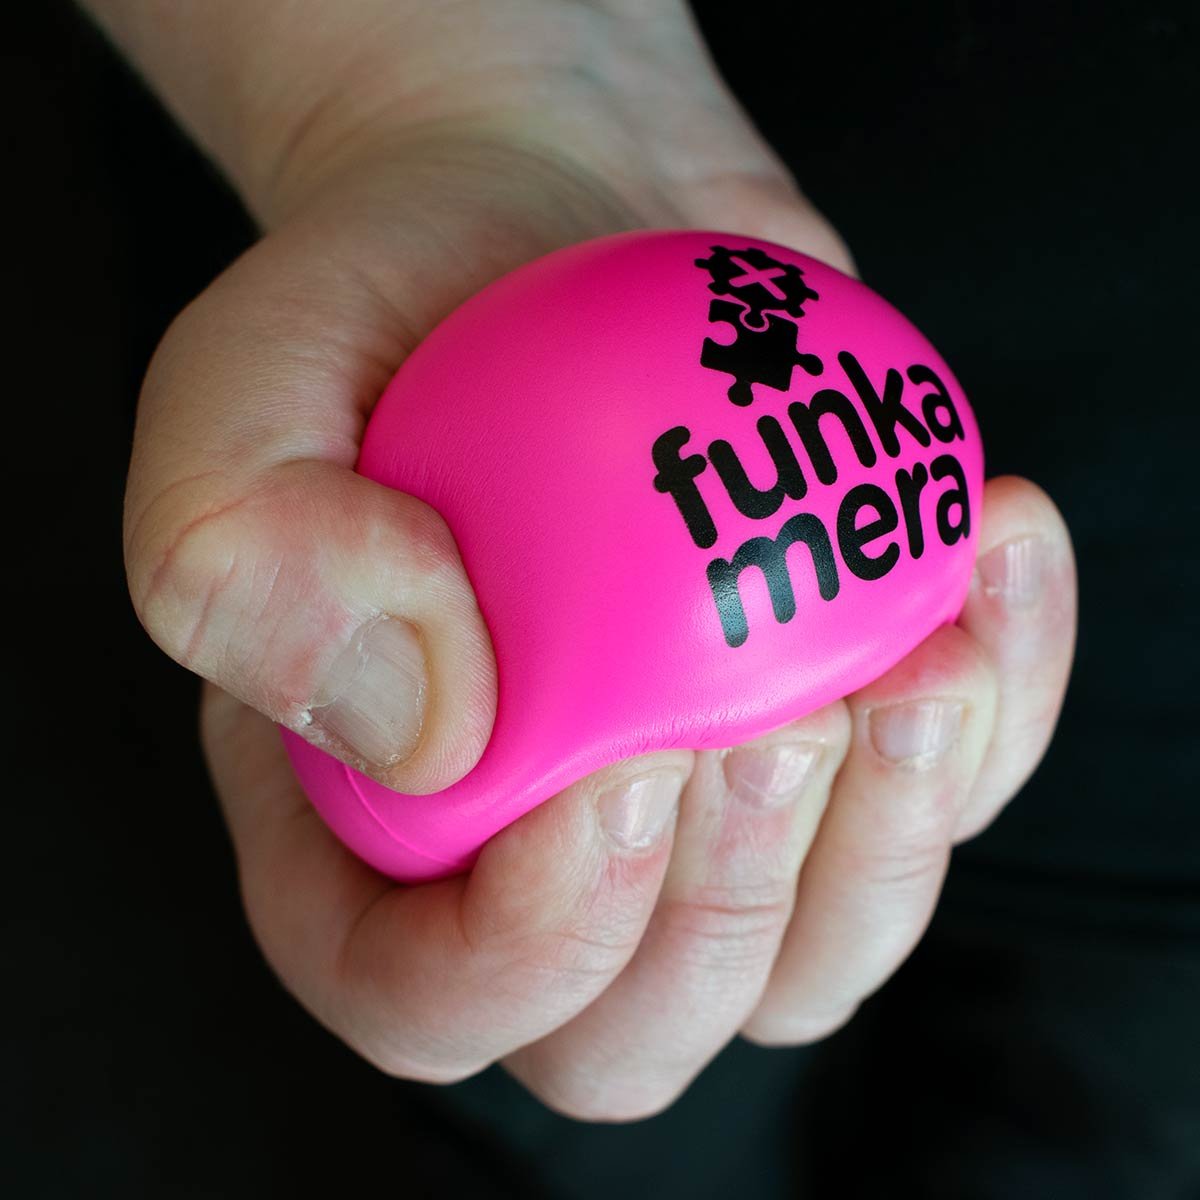 Funka Mera Plus Stressboll, mjuk - cerise